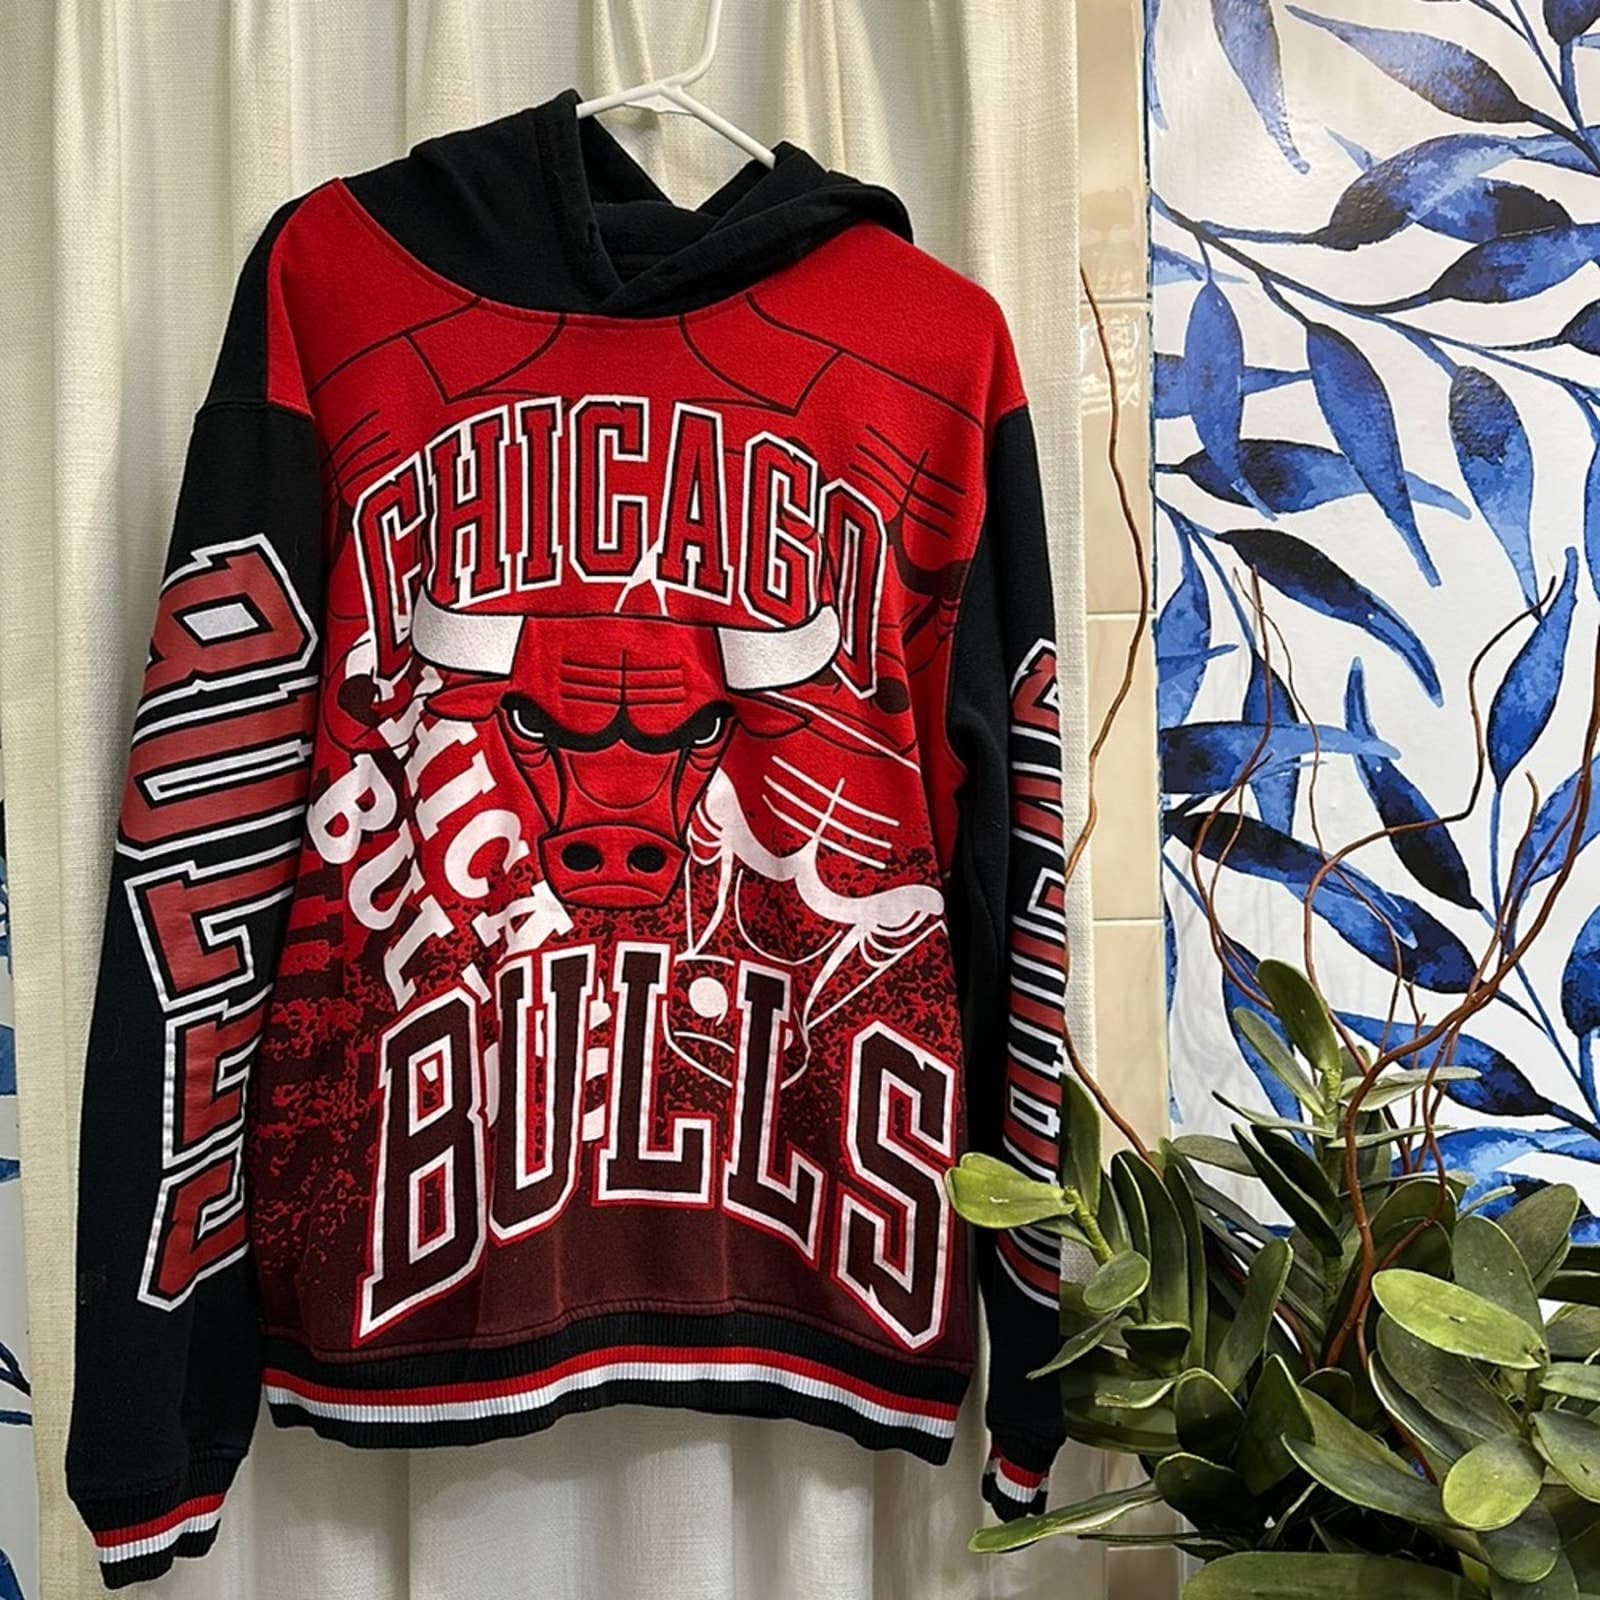 Authentic Men's Chicago Bulls Hoodies & Sweatshirts – Official